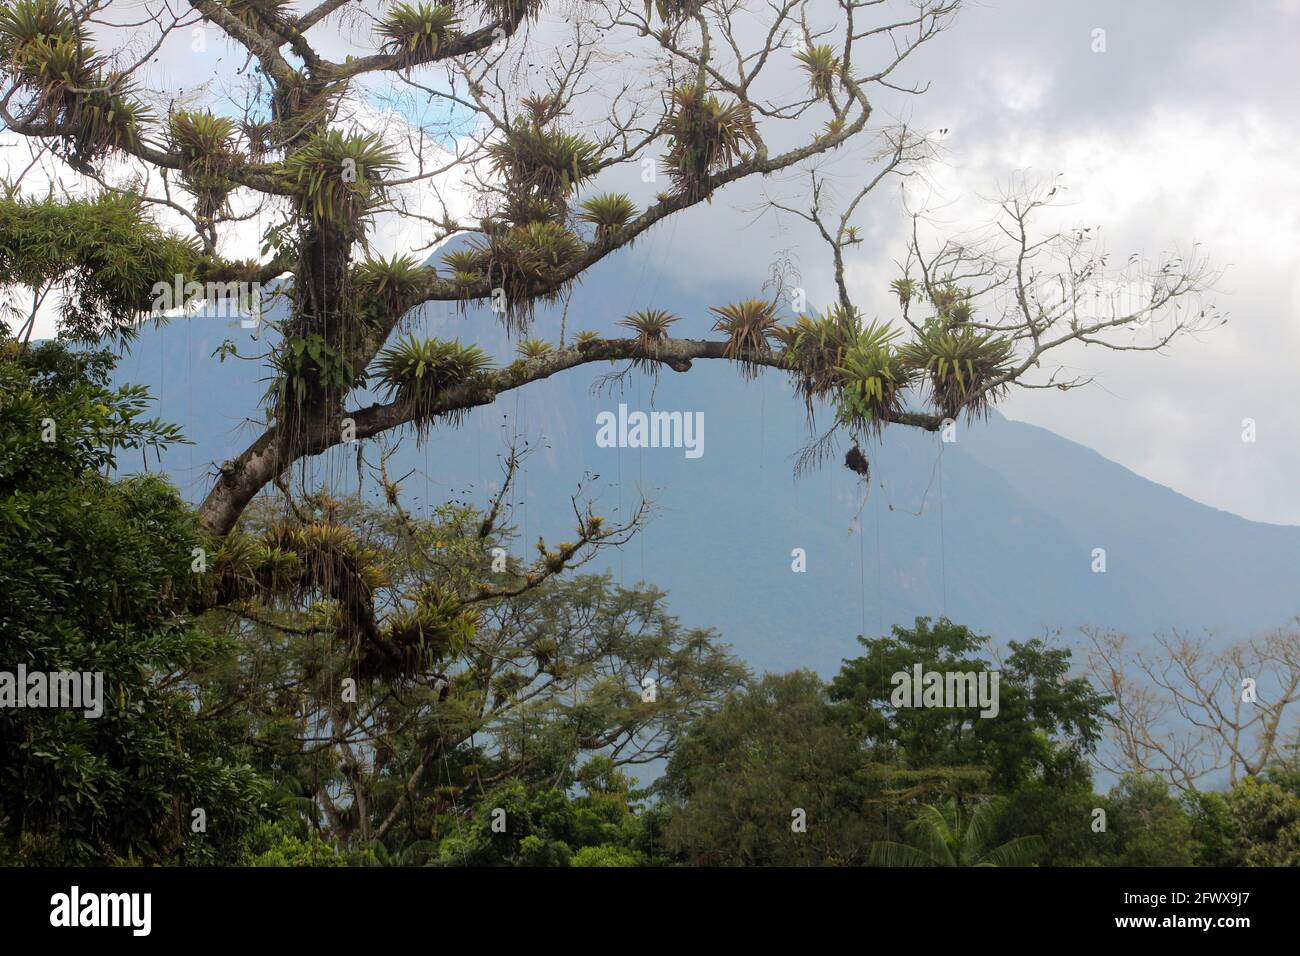 Guapuruvu, grande árvore da mata atlântica, de crescimento muito rápido Stock Photo